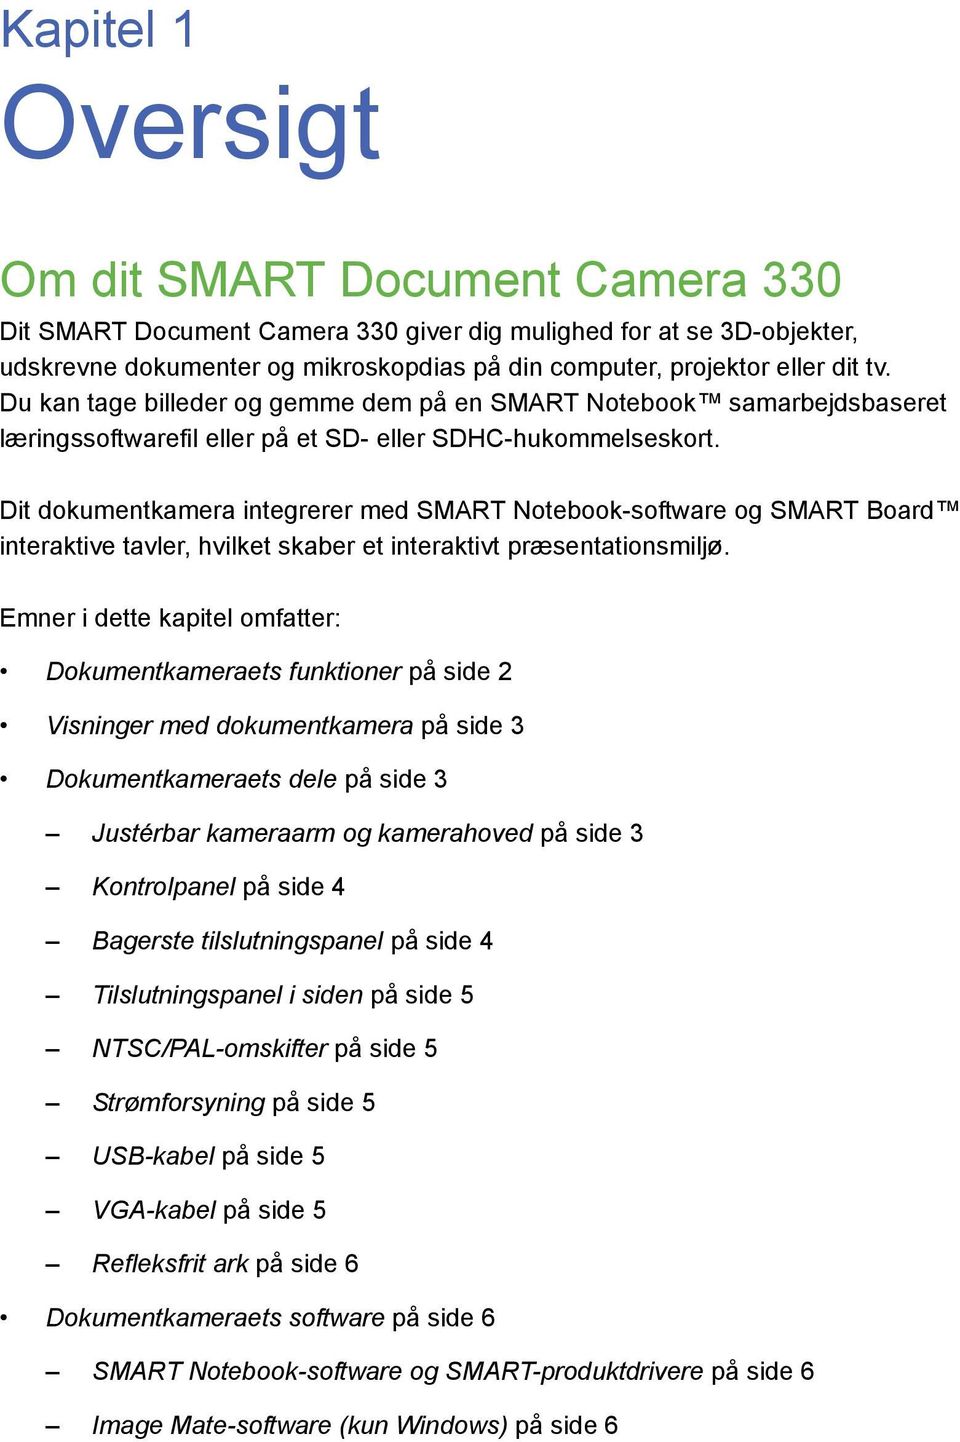 Dit dokumentkamera integrerer med SMART Notebook-software og SMART Board interaktive tavler, hvilket skaber et interaktivt præsentationsmiljø.